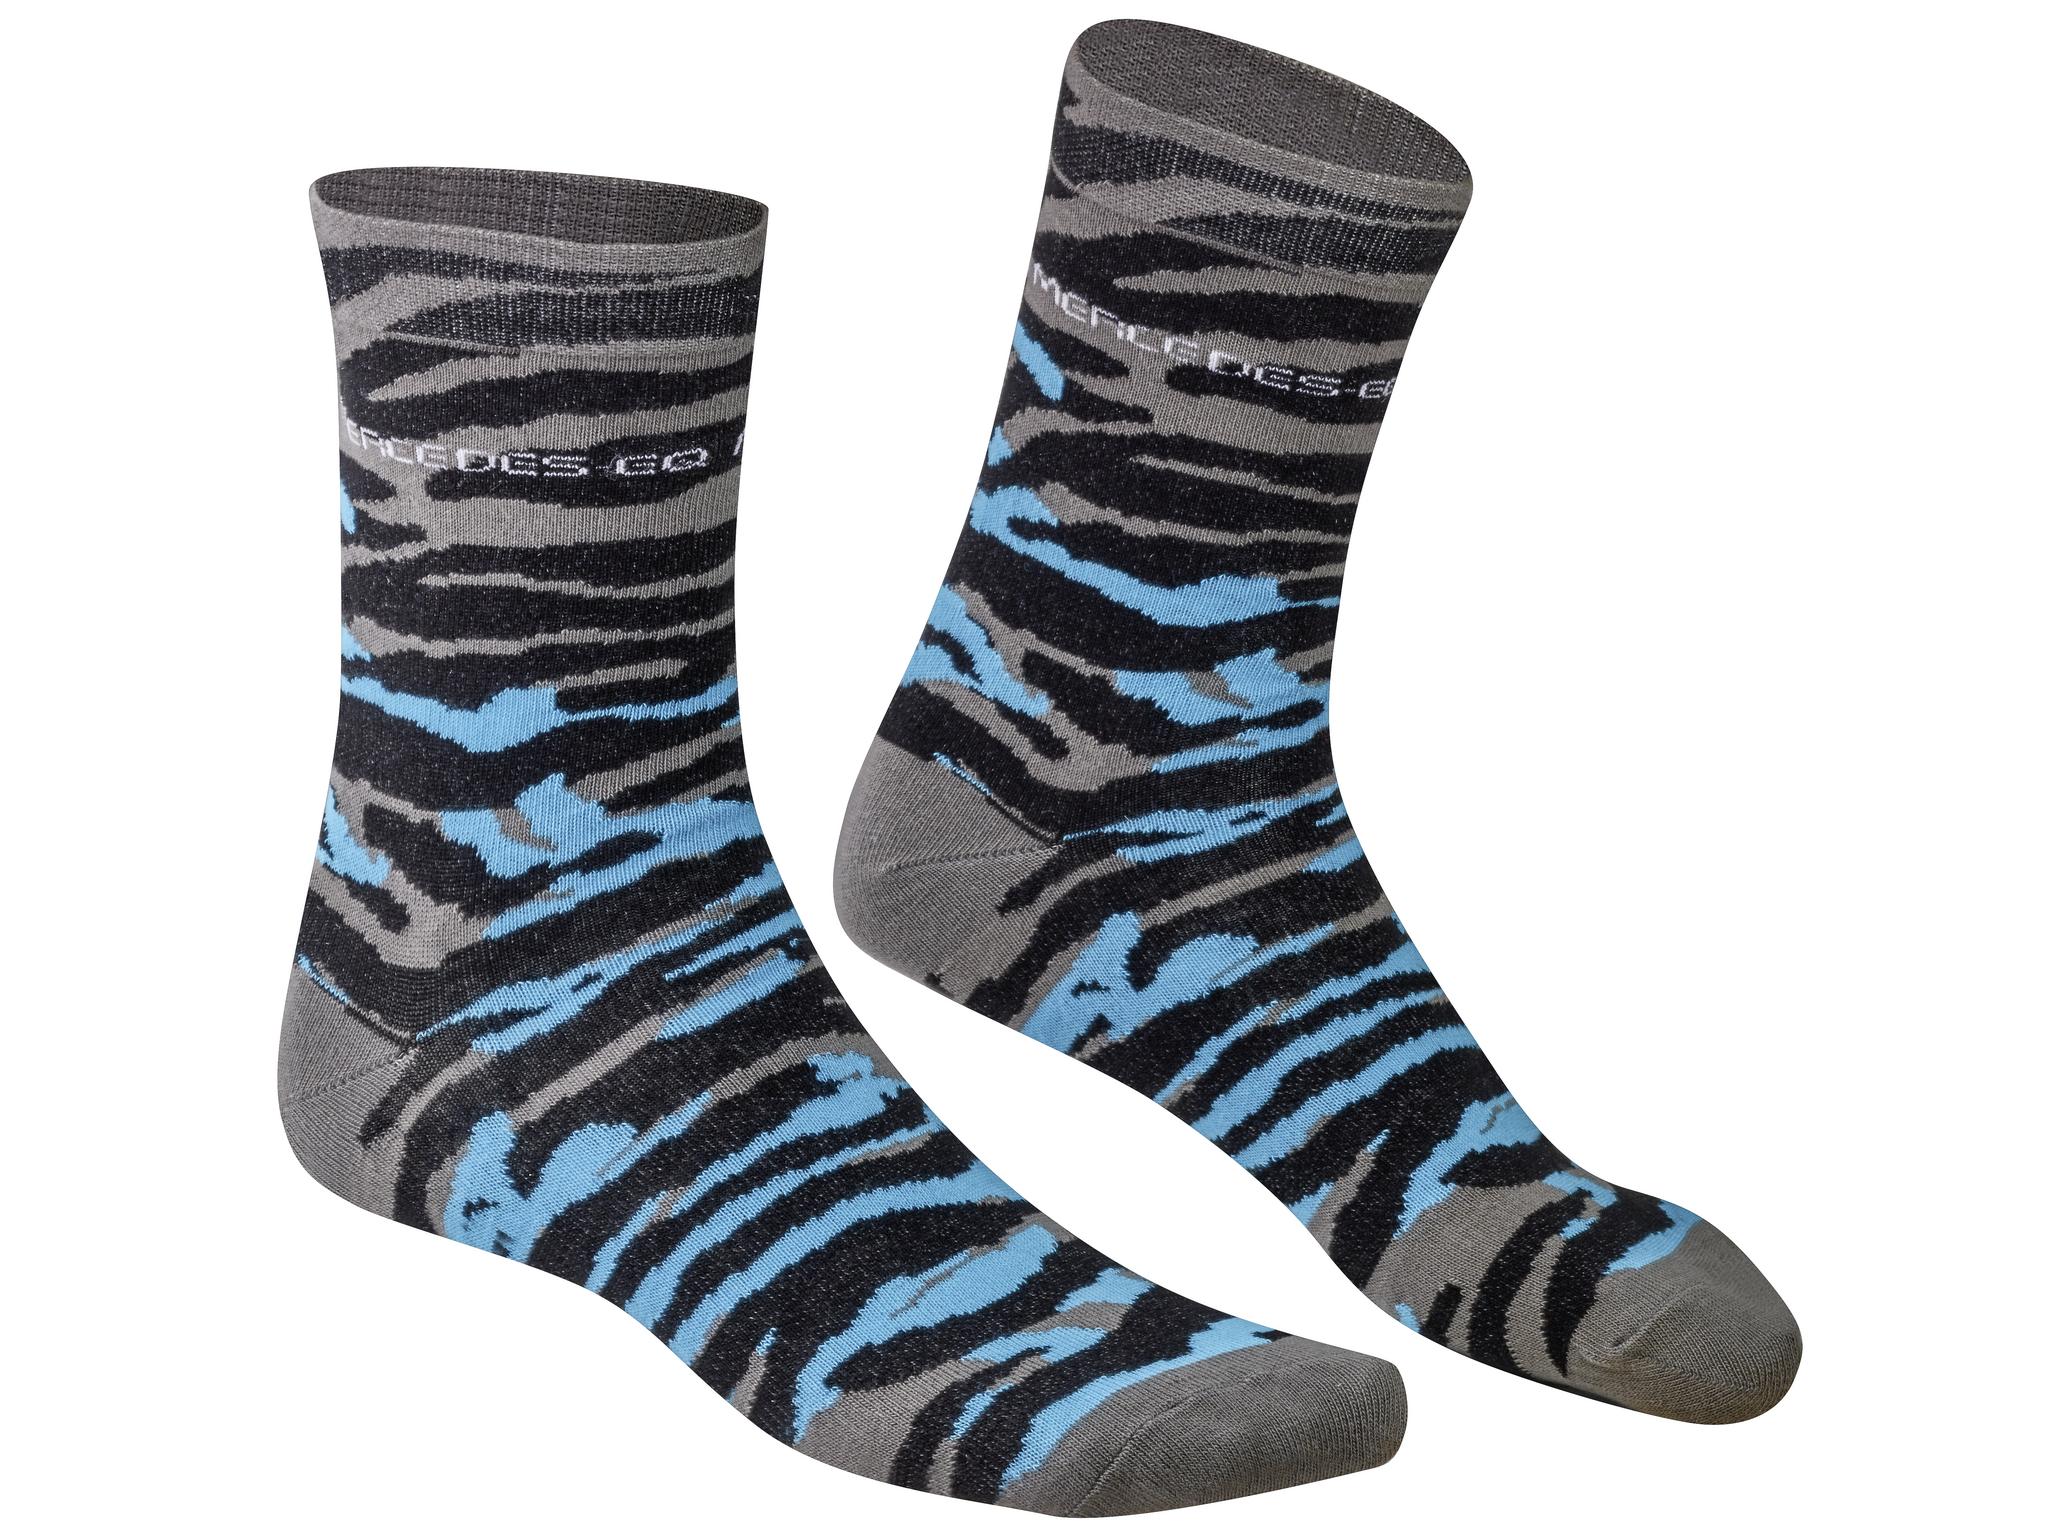 Socken unisex - schwarz / blau / silberfarben